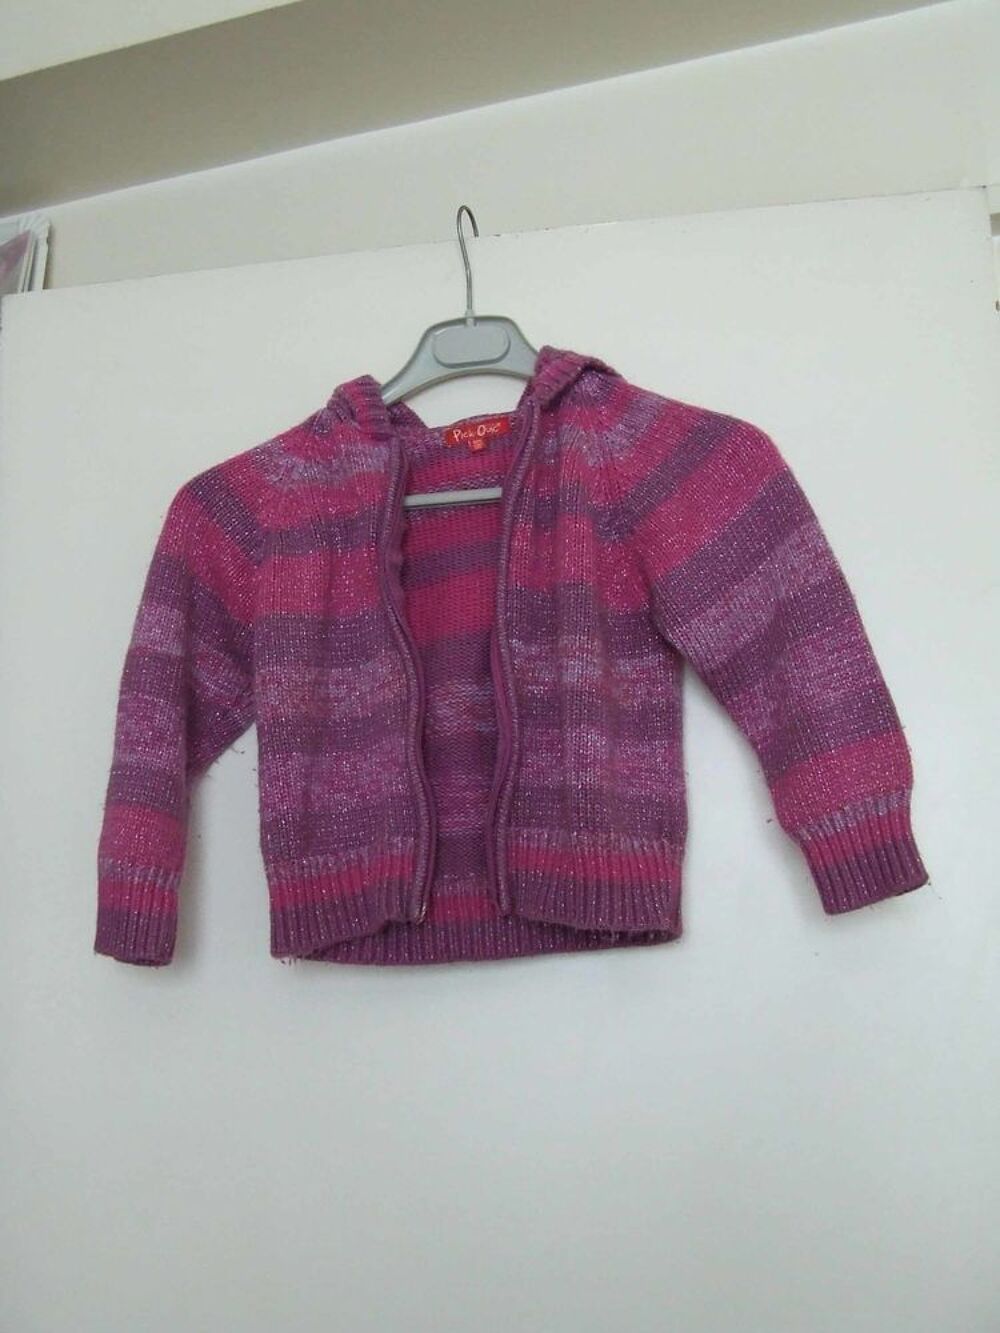 Gilet laine rose violet PICK OUIC, T. 8&nbsp;ans Vtements enfants